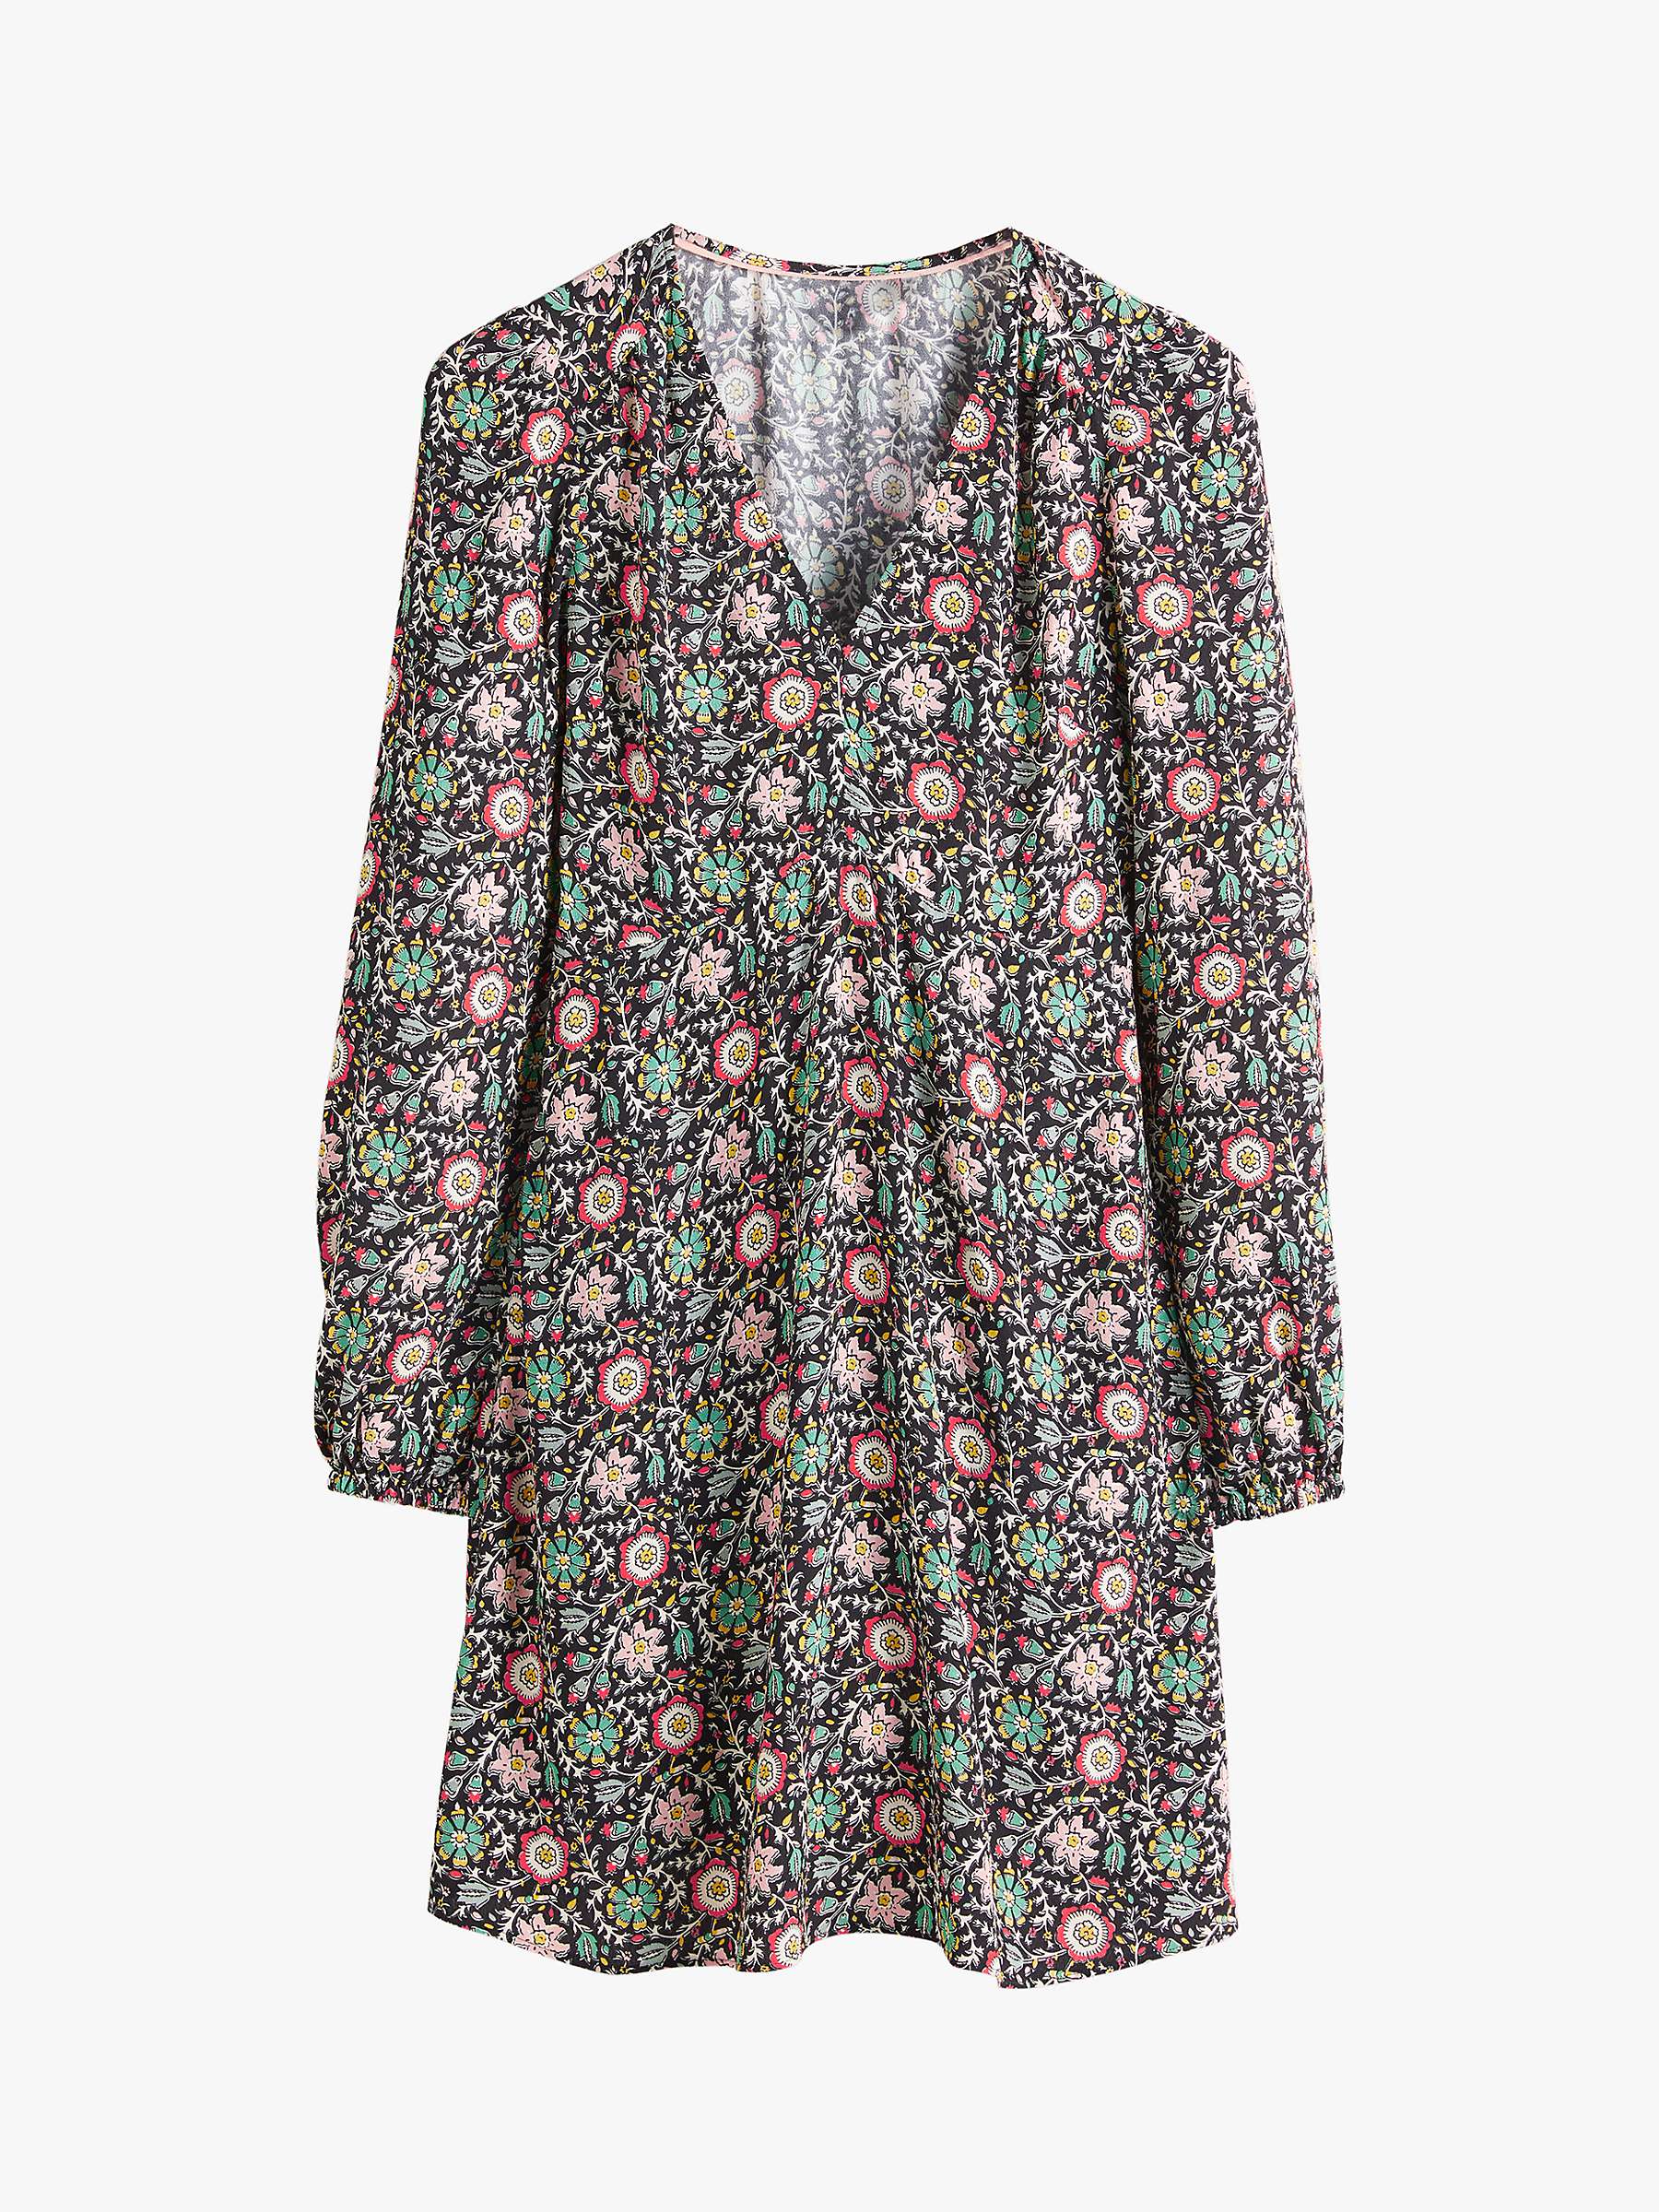 Buy Boden Floral Print V-Neck Tea Dress, Multi Online at johnlewis.com